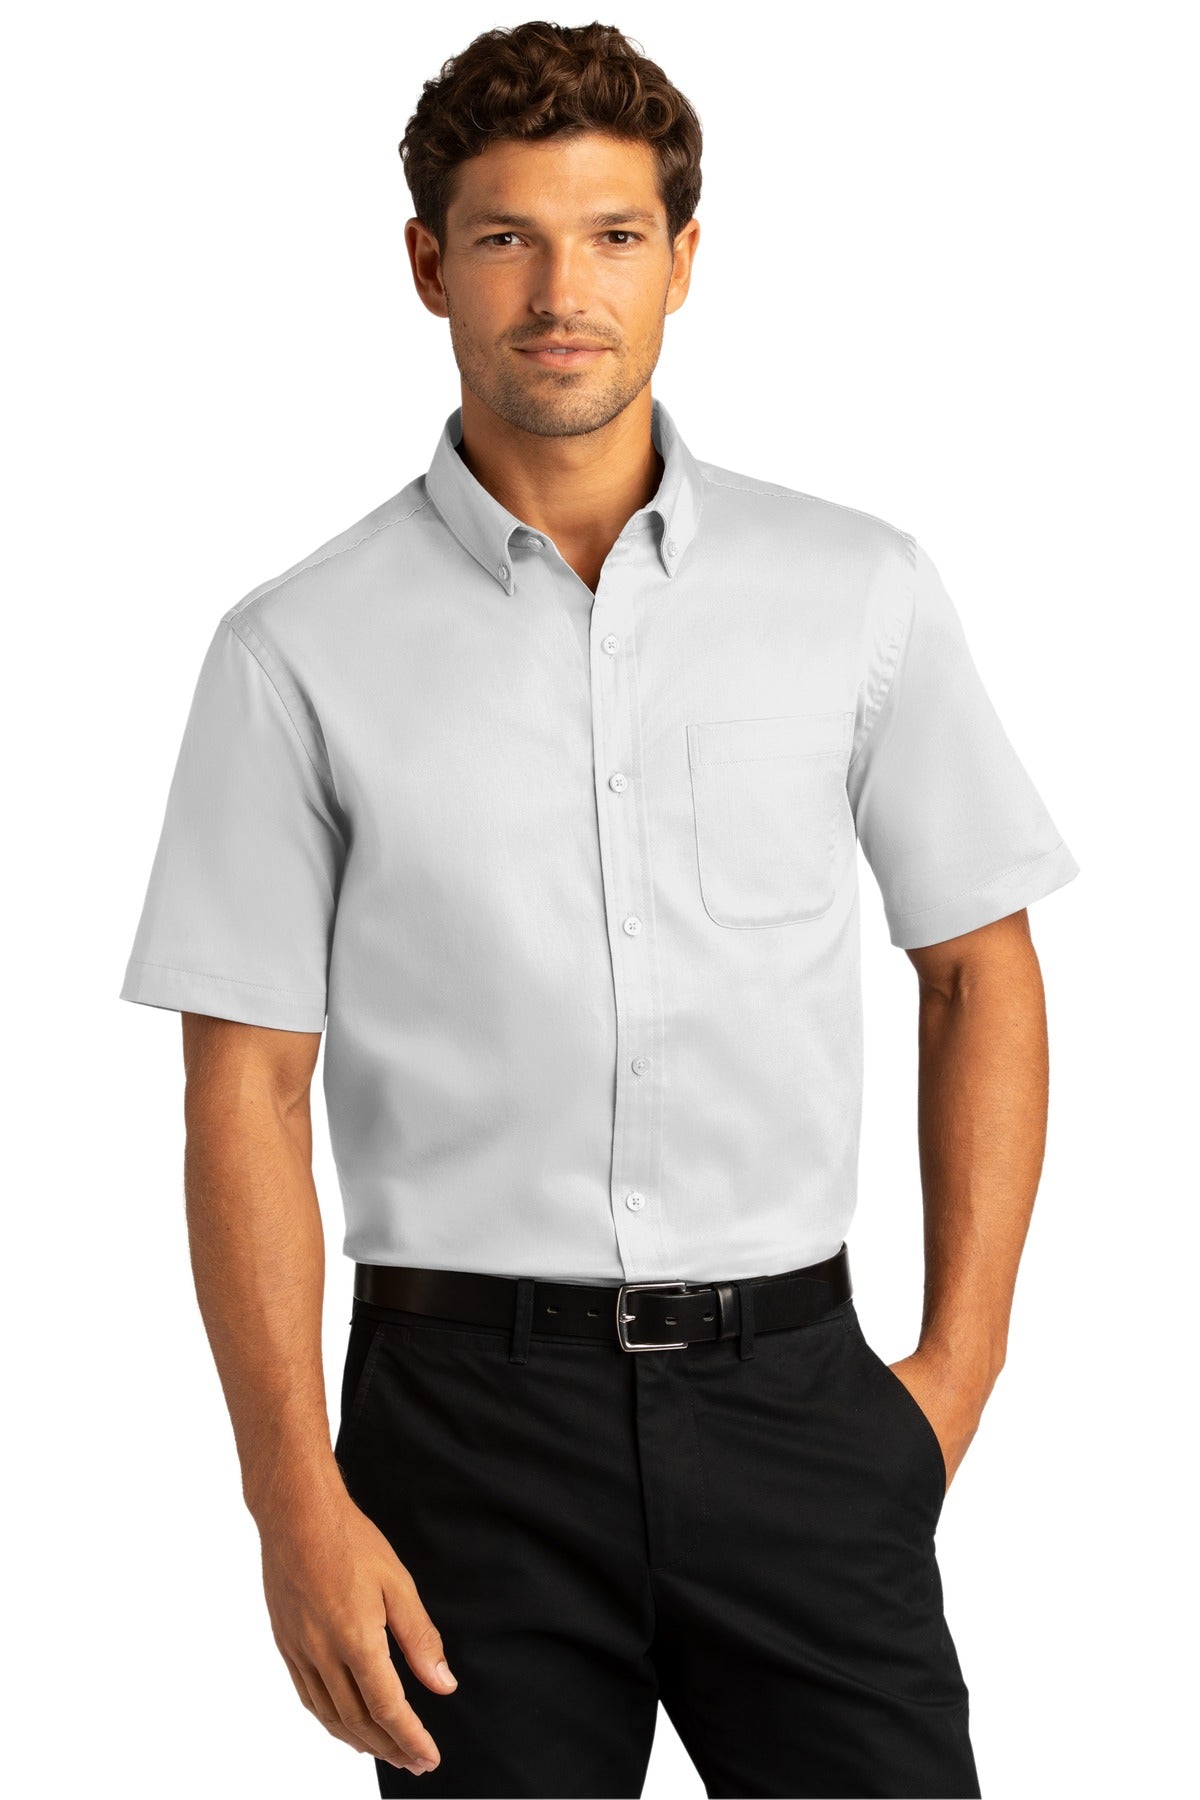 Port Authority® Short Sleeve SuperPro React™ Twill Shirt. W809 [White] - DFW Impression